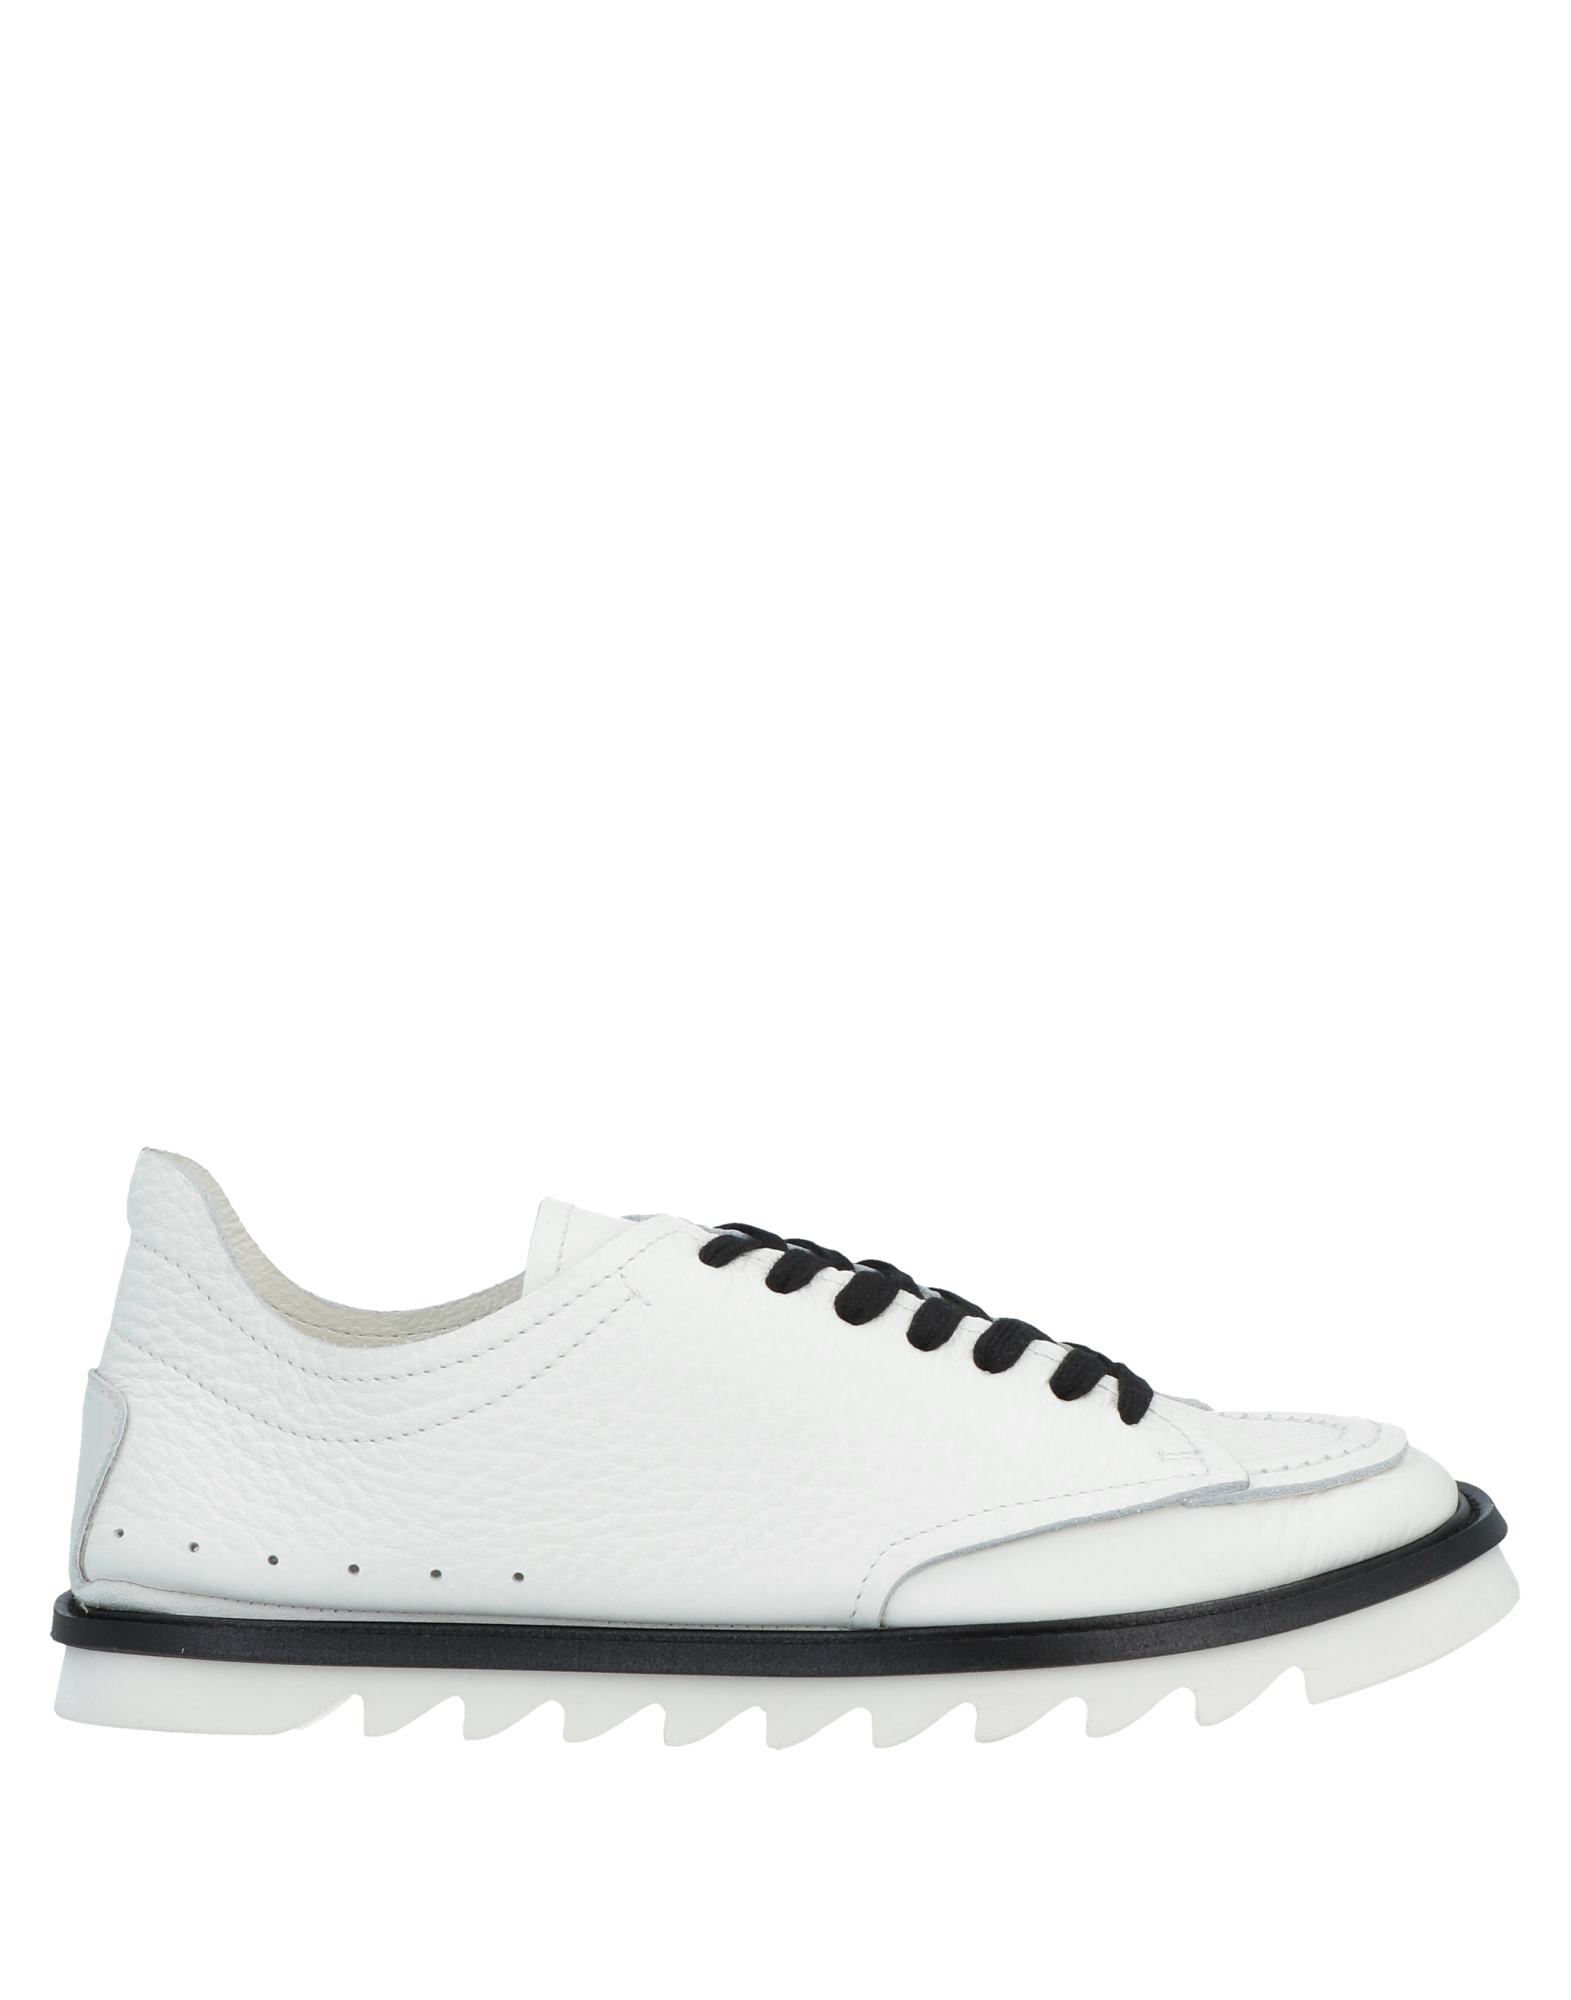 Attimonelli's Sneakers In White